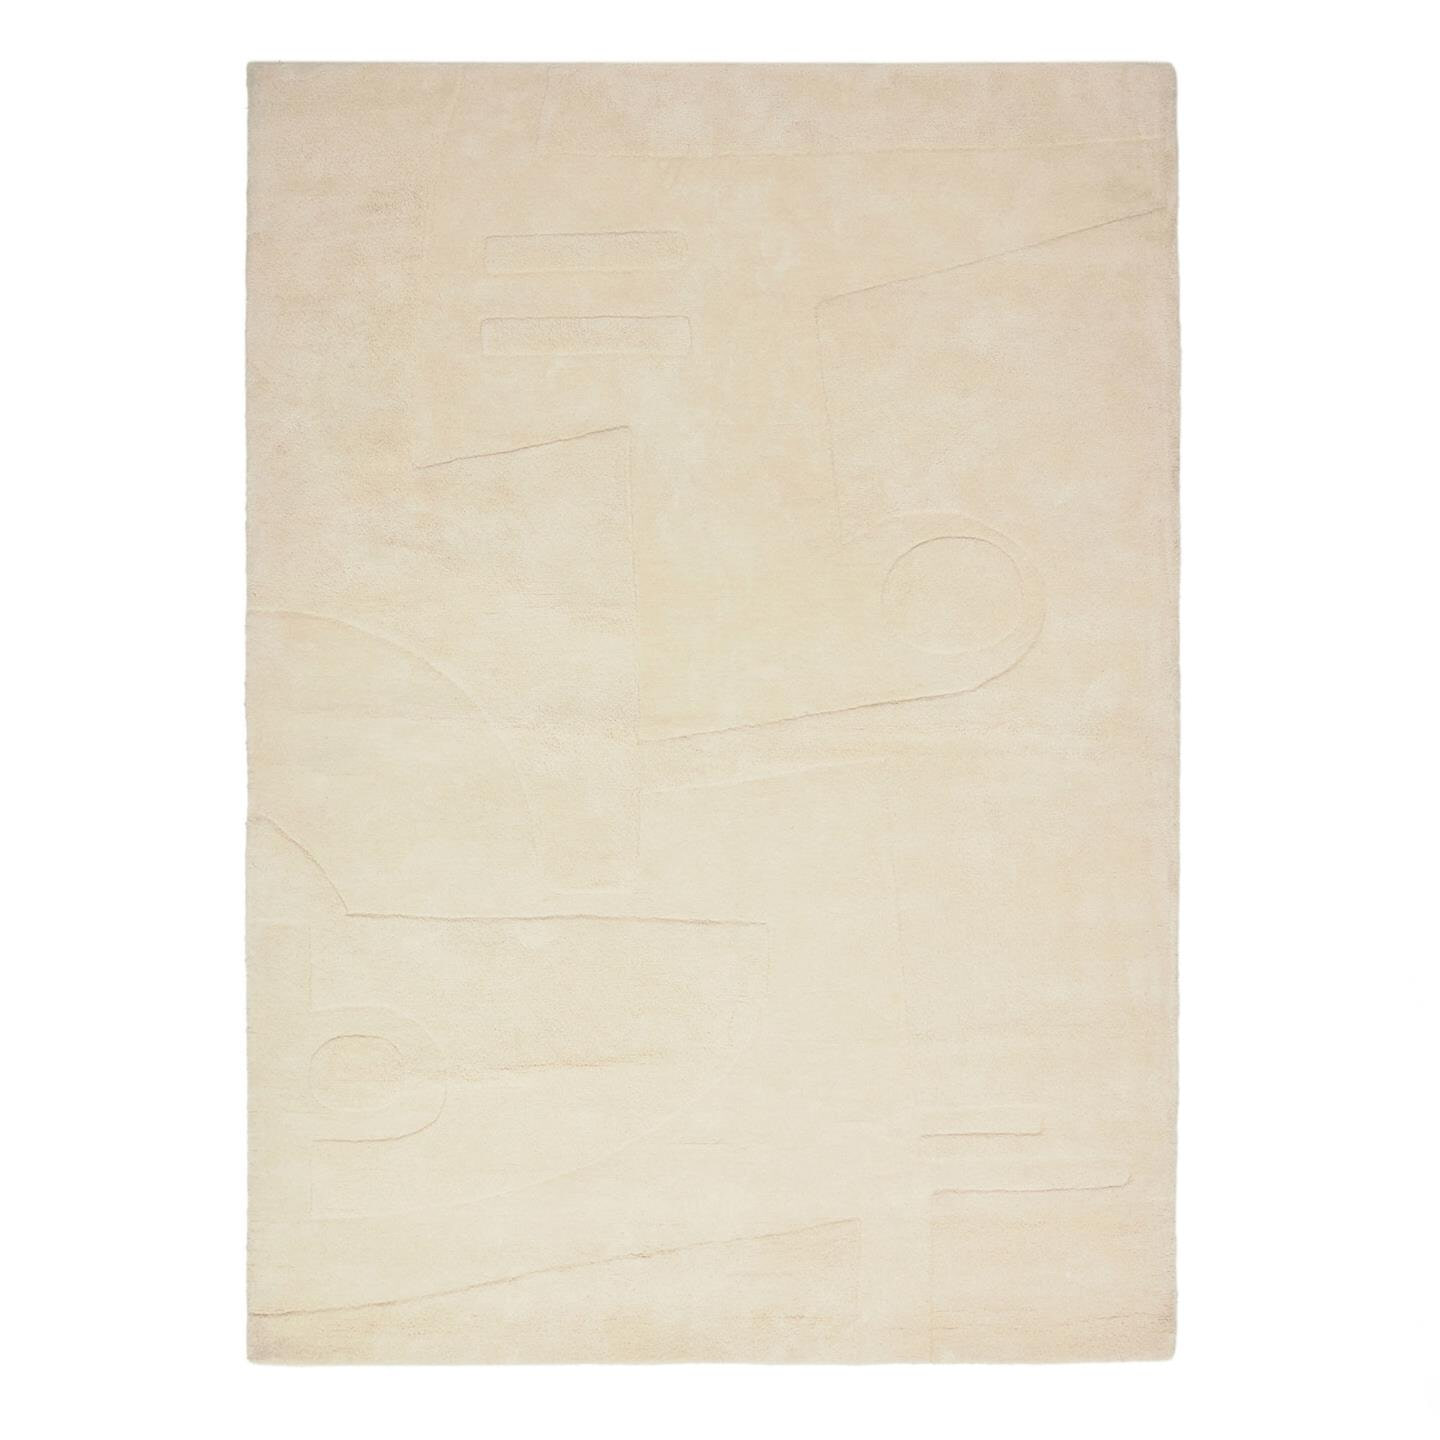 Kave Home - Enriqueta tapijt van 100% wit katoen, 160 x 230 cm